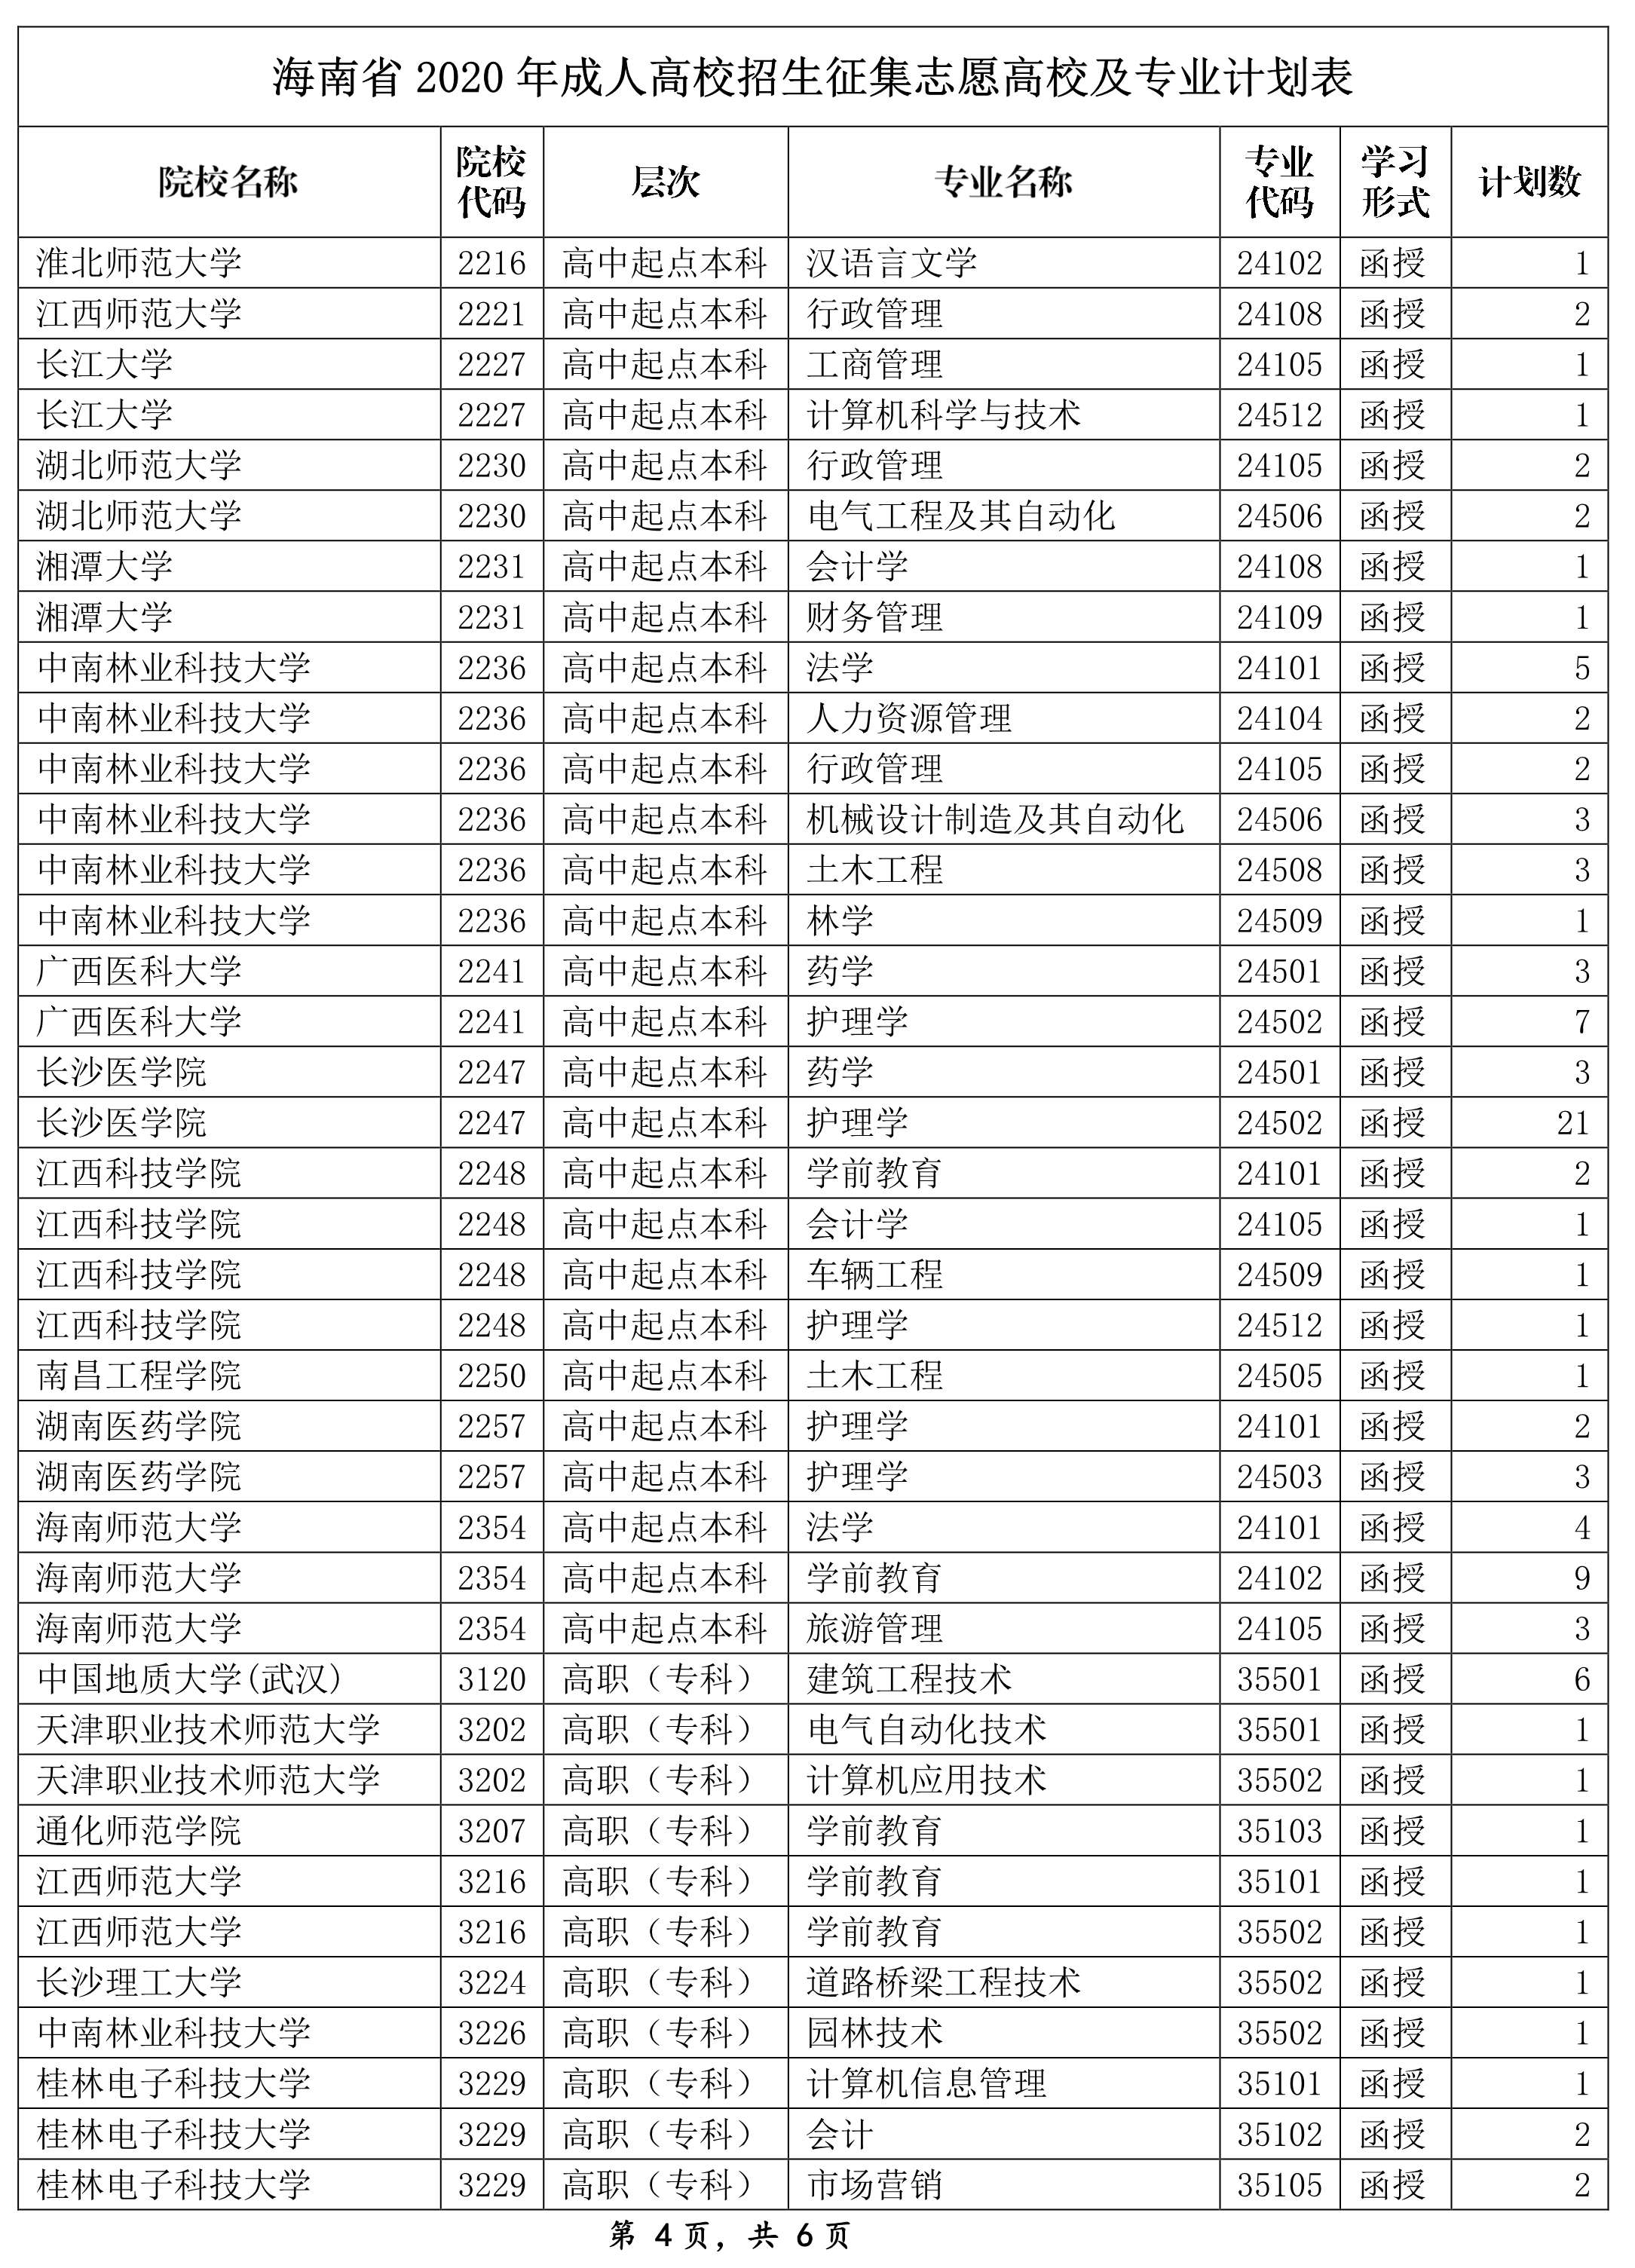 海南省2020年成人高校招生征集志愿高校及专业计划表